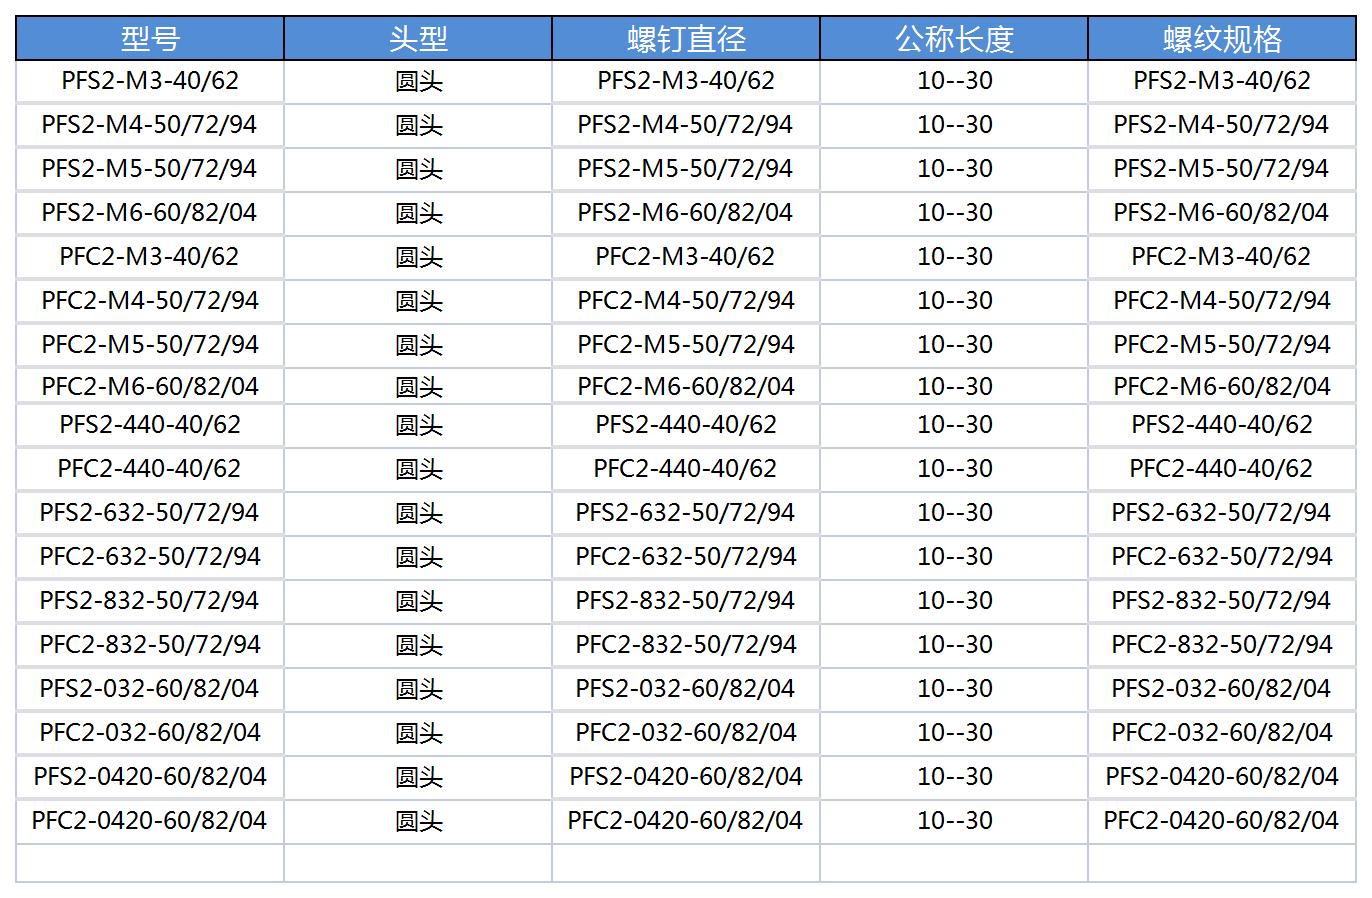 产品数据收集模板1_B2F21.jpg